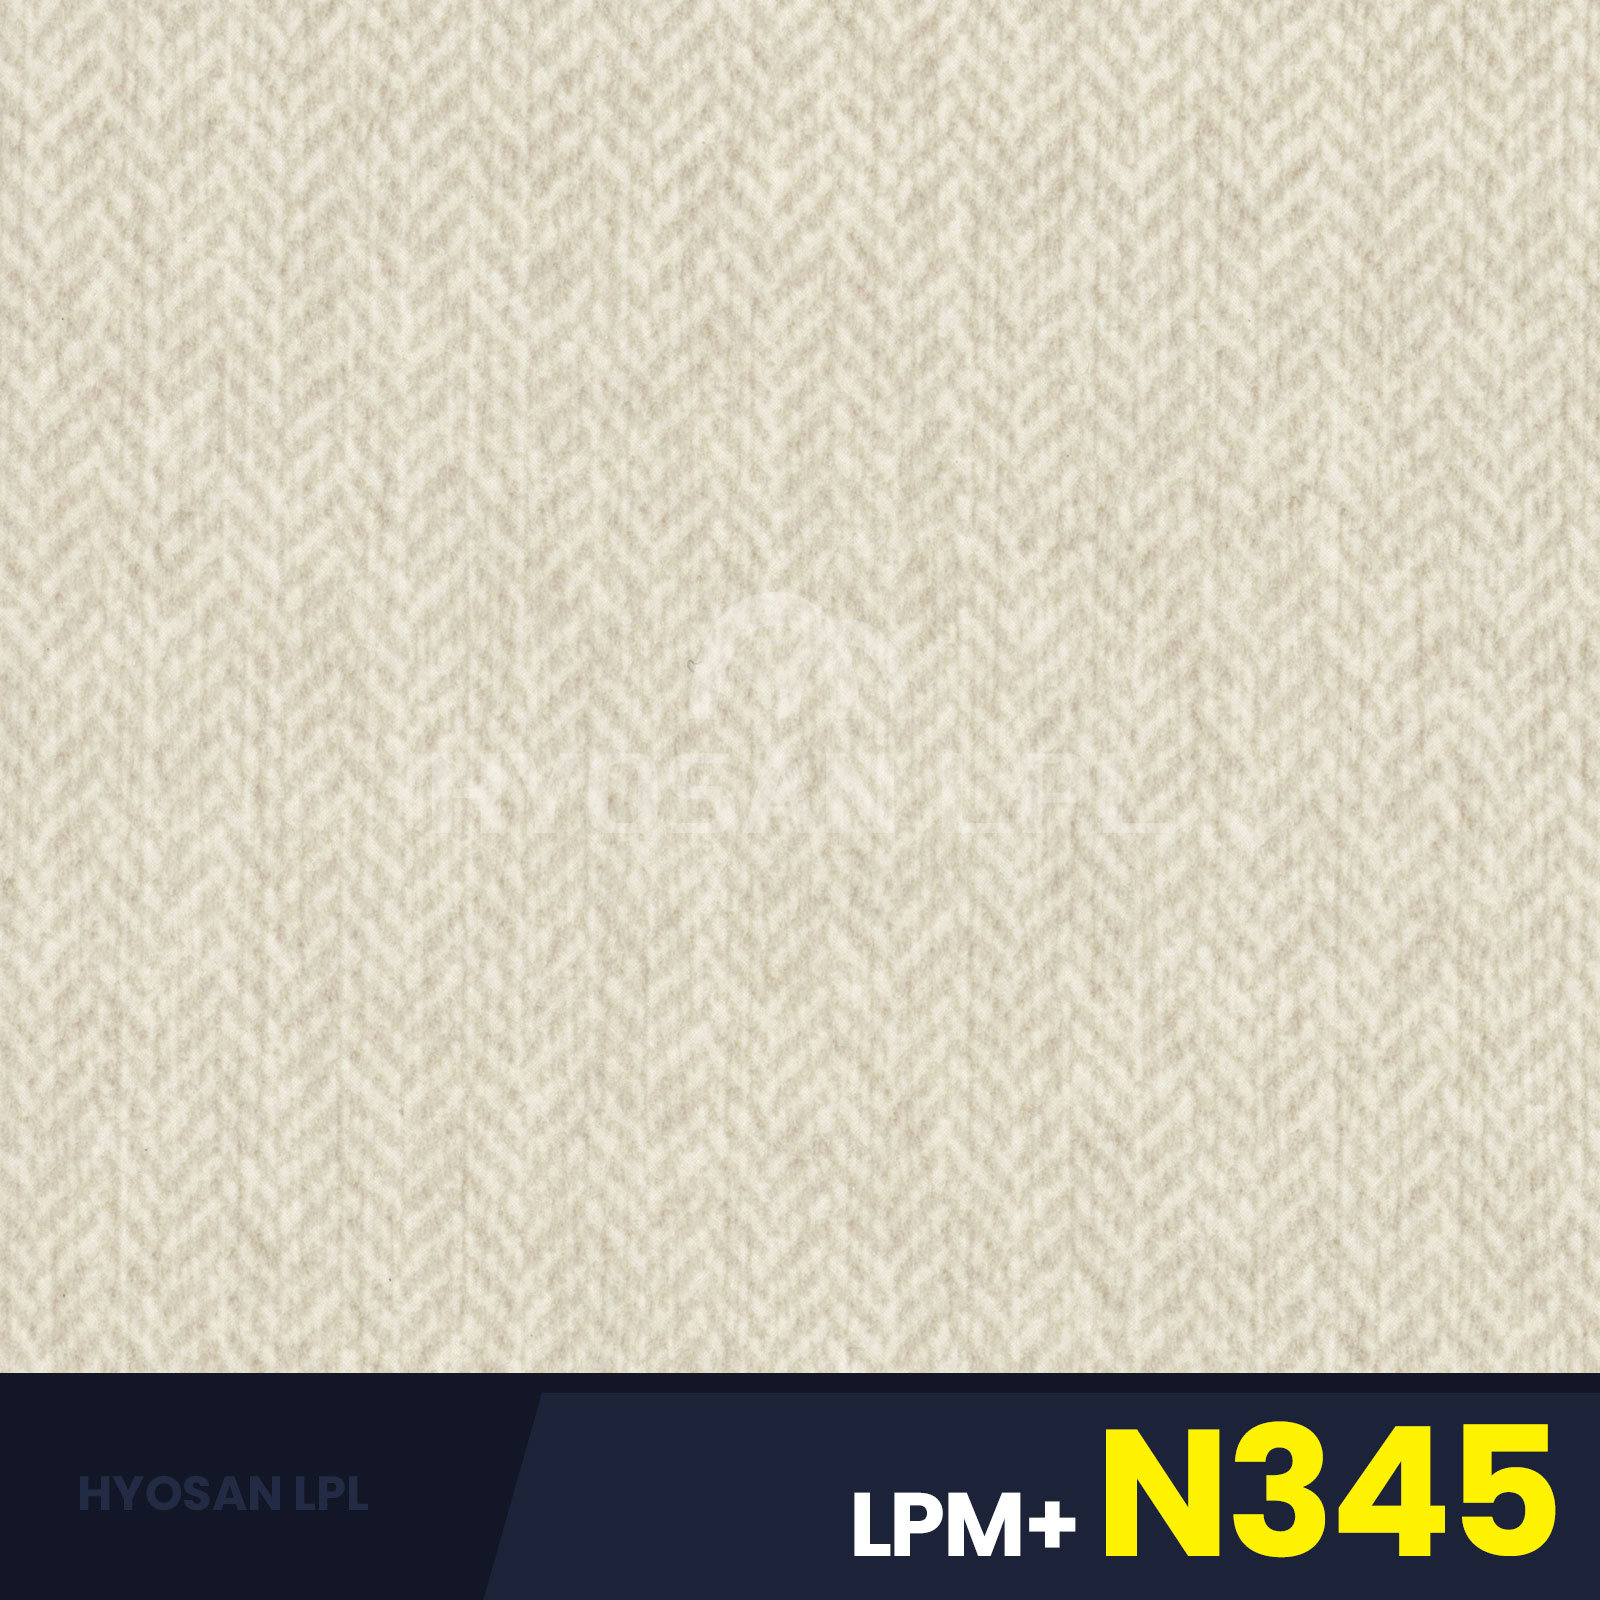 LPM+N345